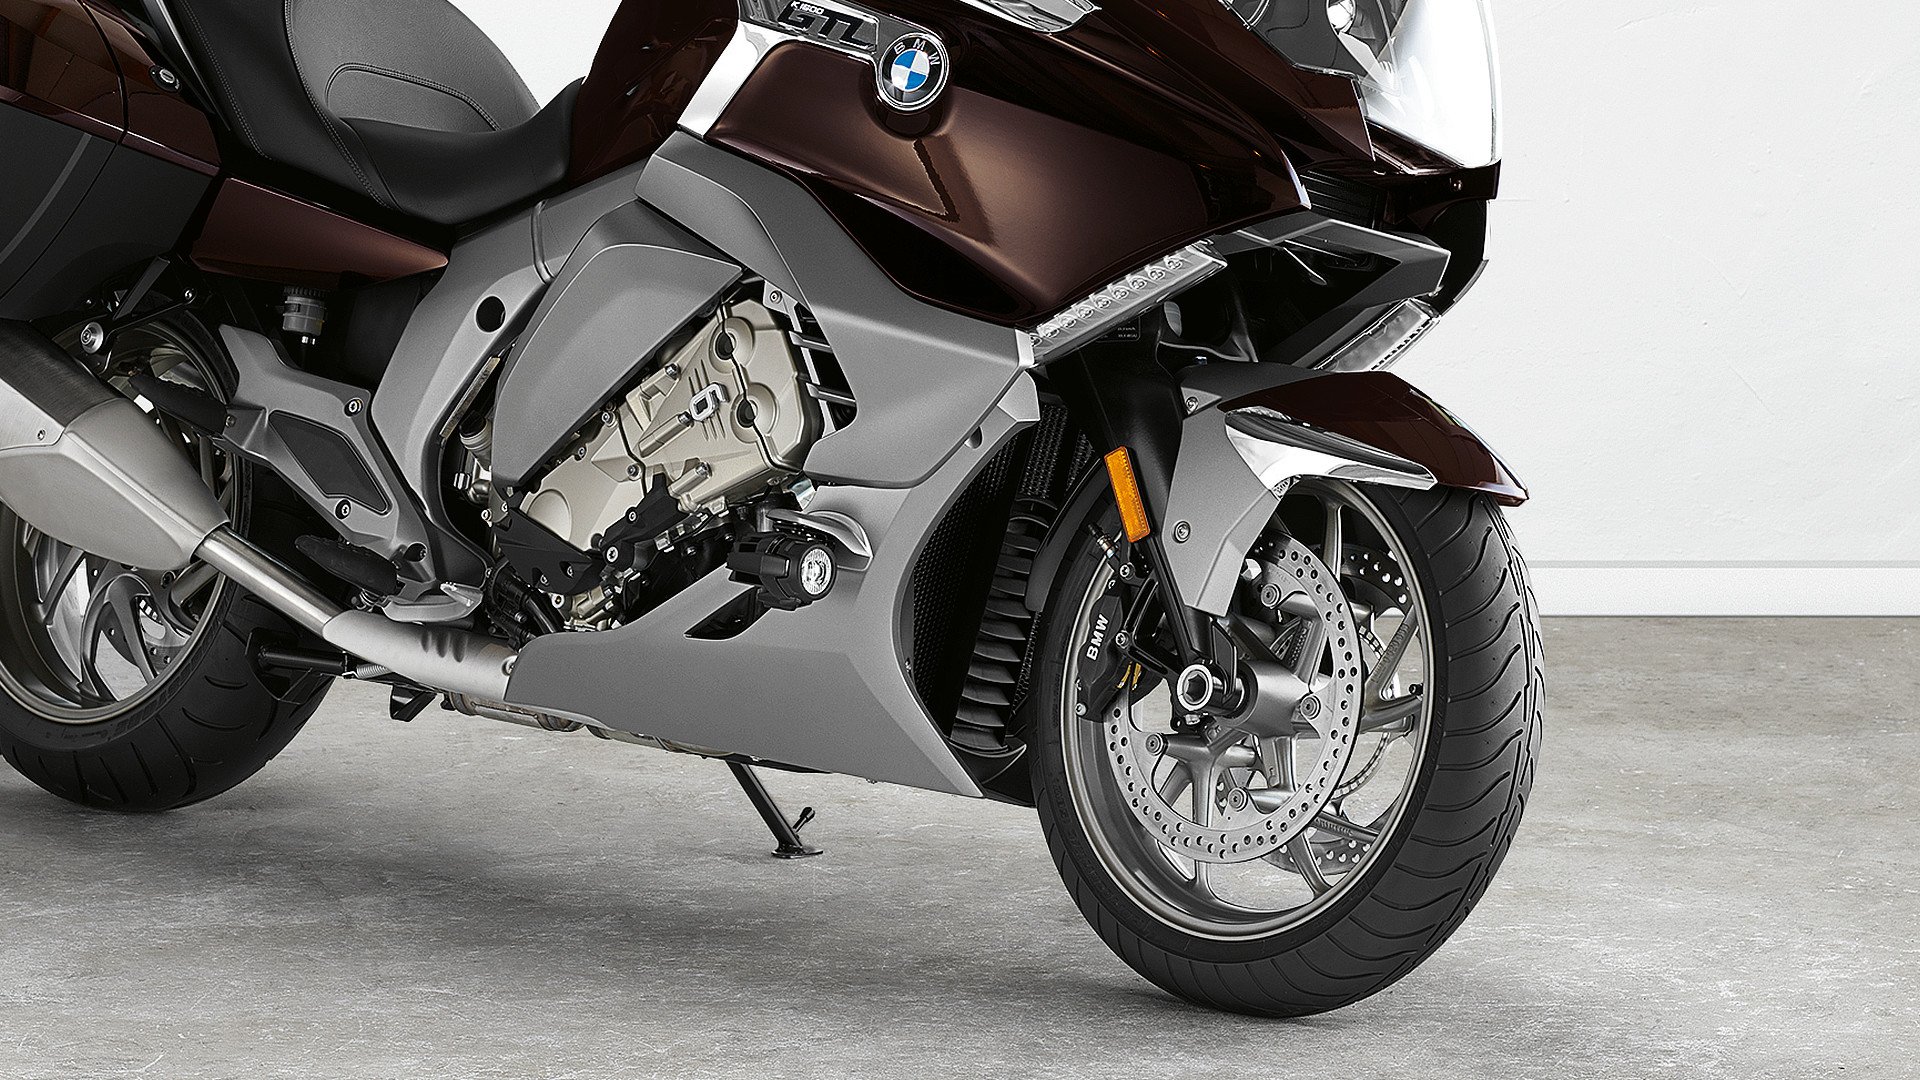 K 1600 GTL | BMW Motorcycles of Burbank